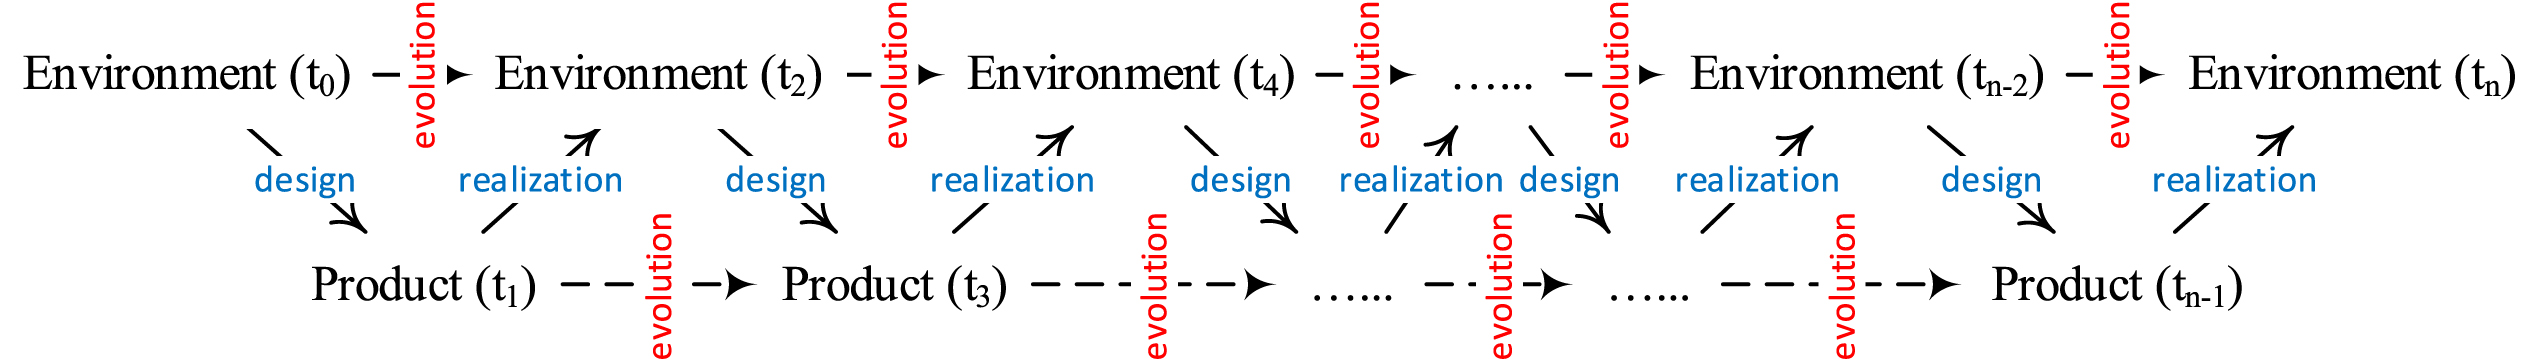 Design process: evolution of environment (Zeng, 2020).